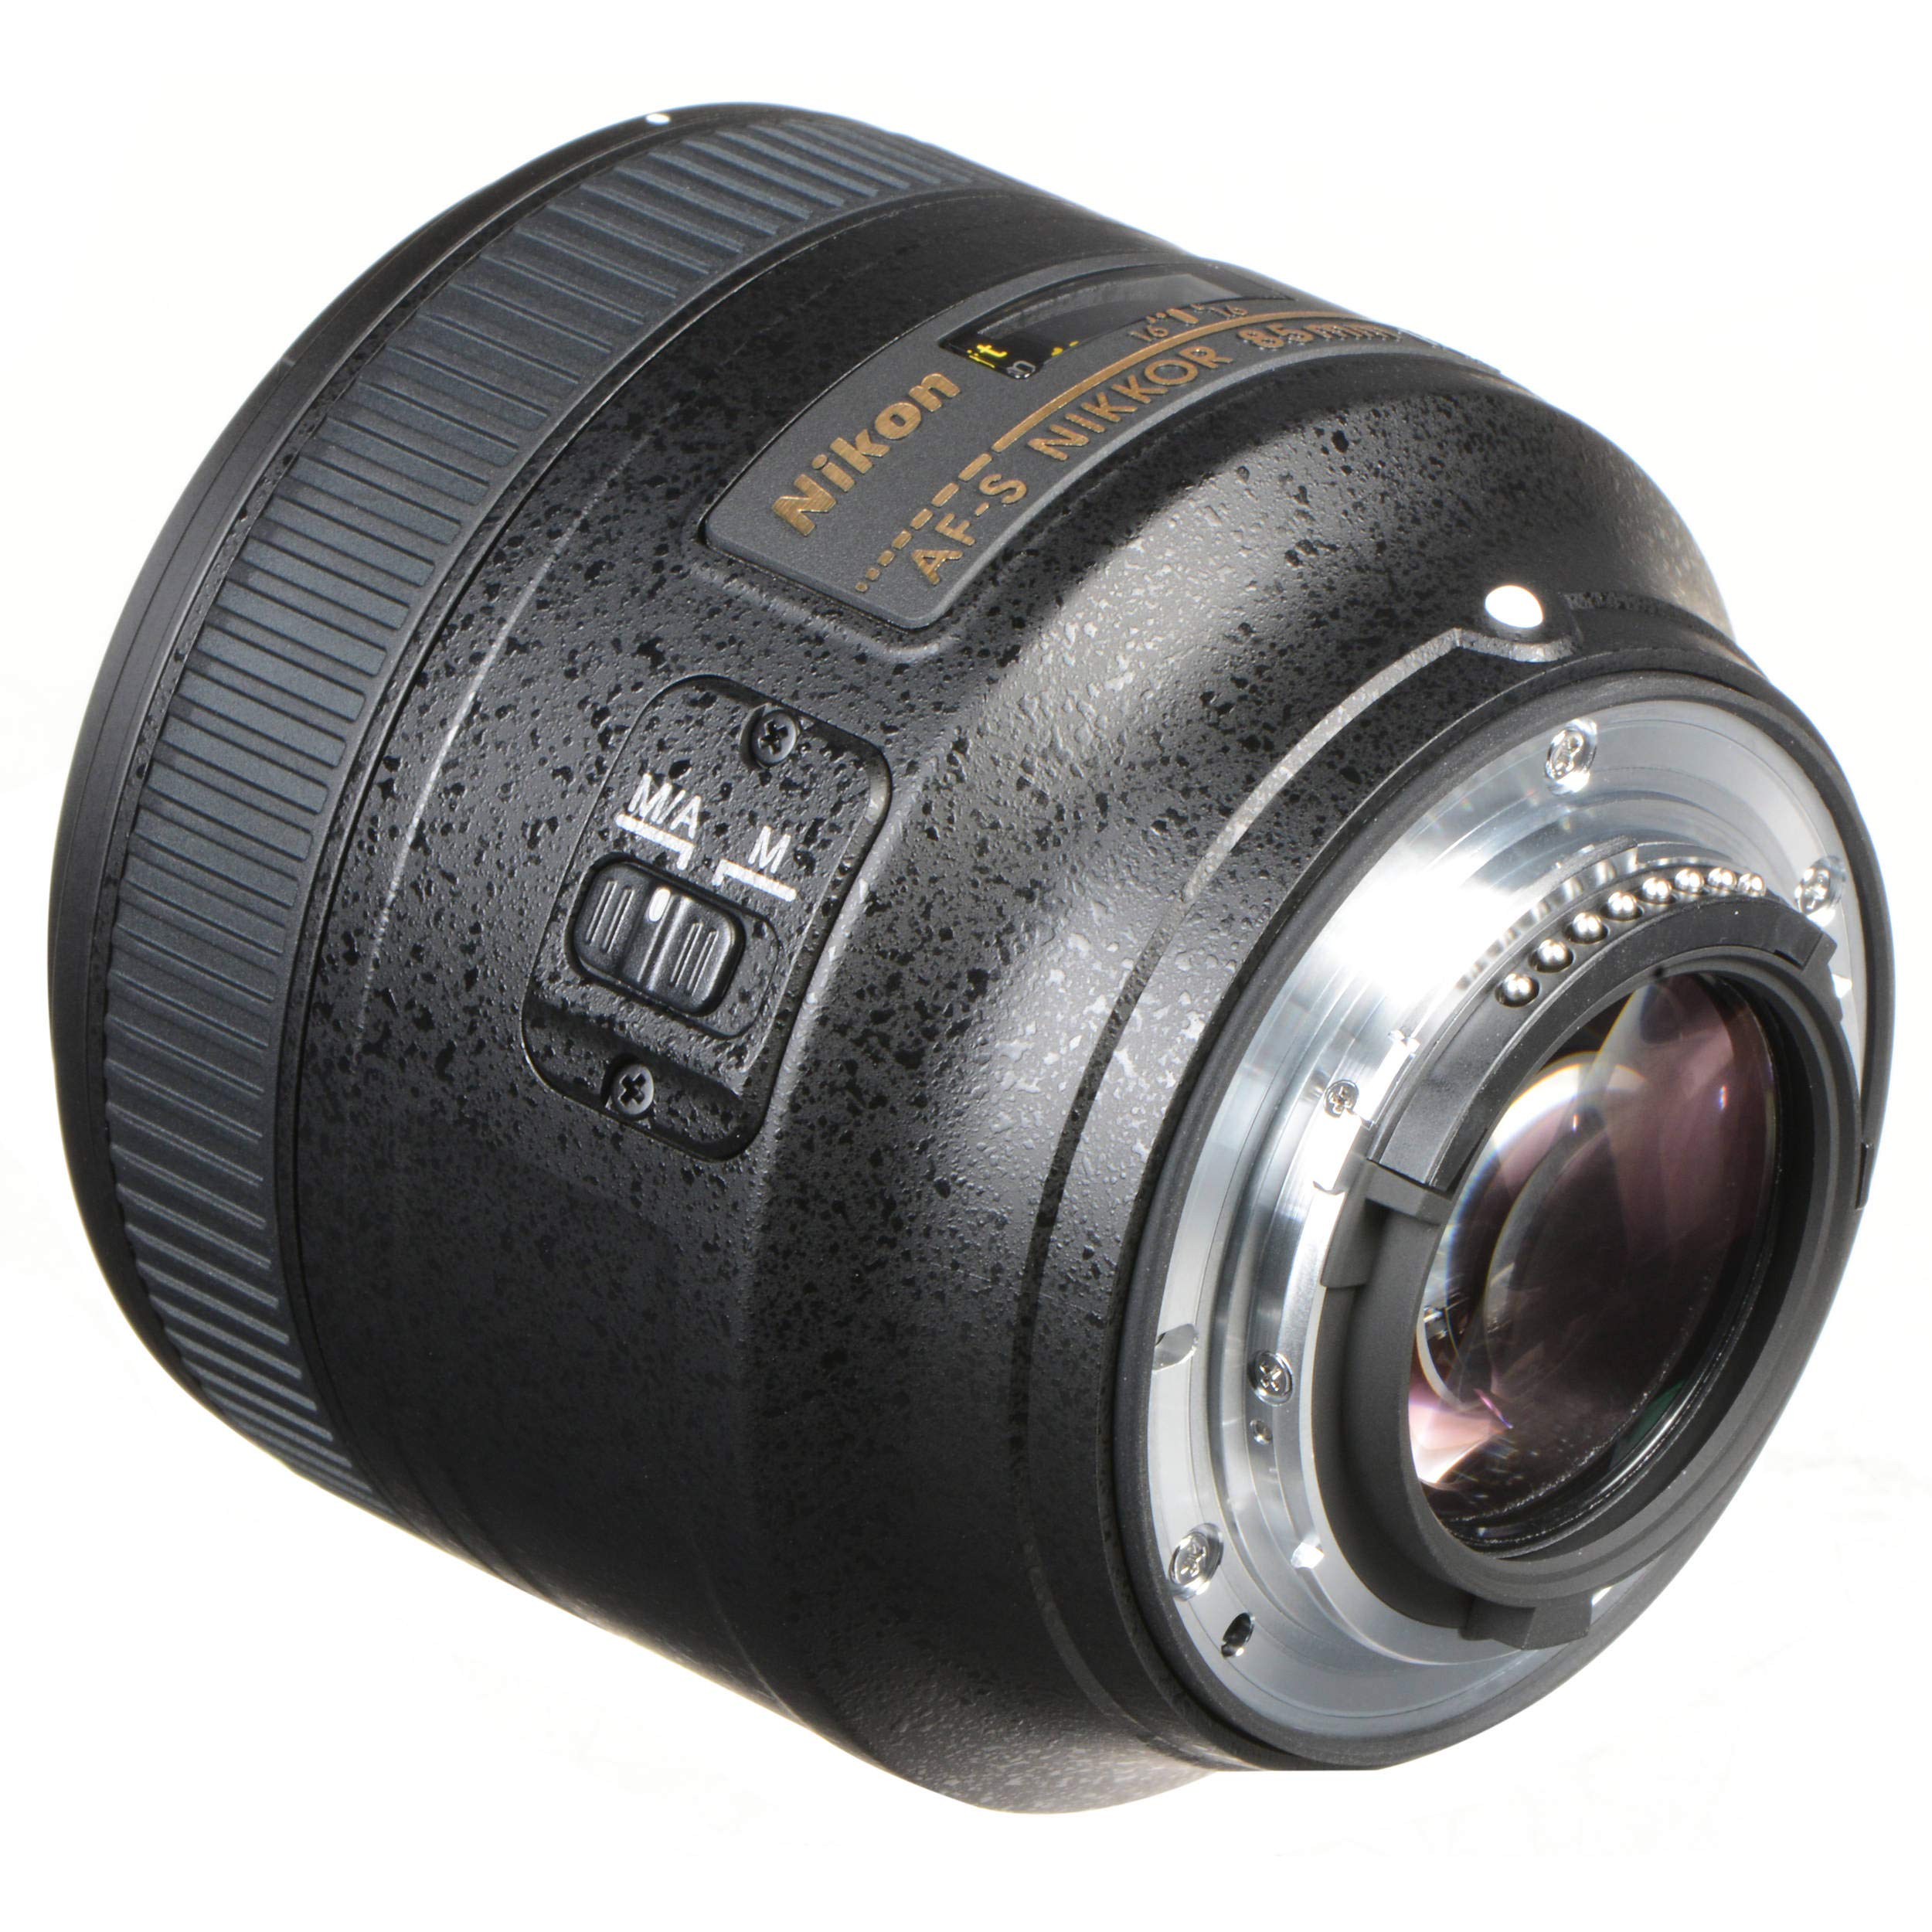 Nikon 85MM f.1.8G AF-S Lens (Intl Model) + 4.5 inch Vivitar Premium Lens Case + Cleaning Kit